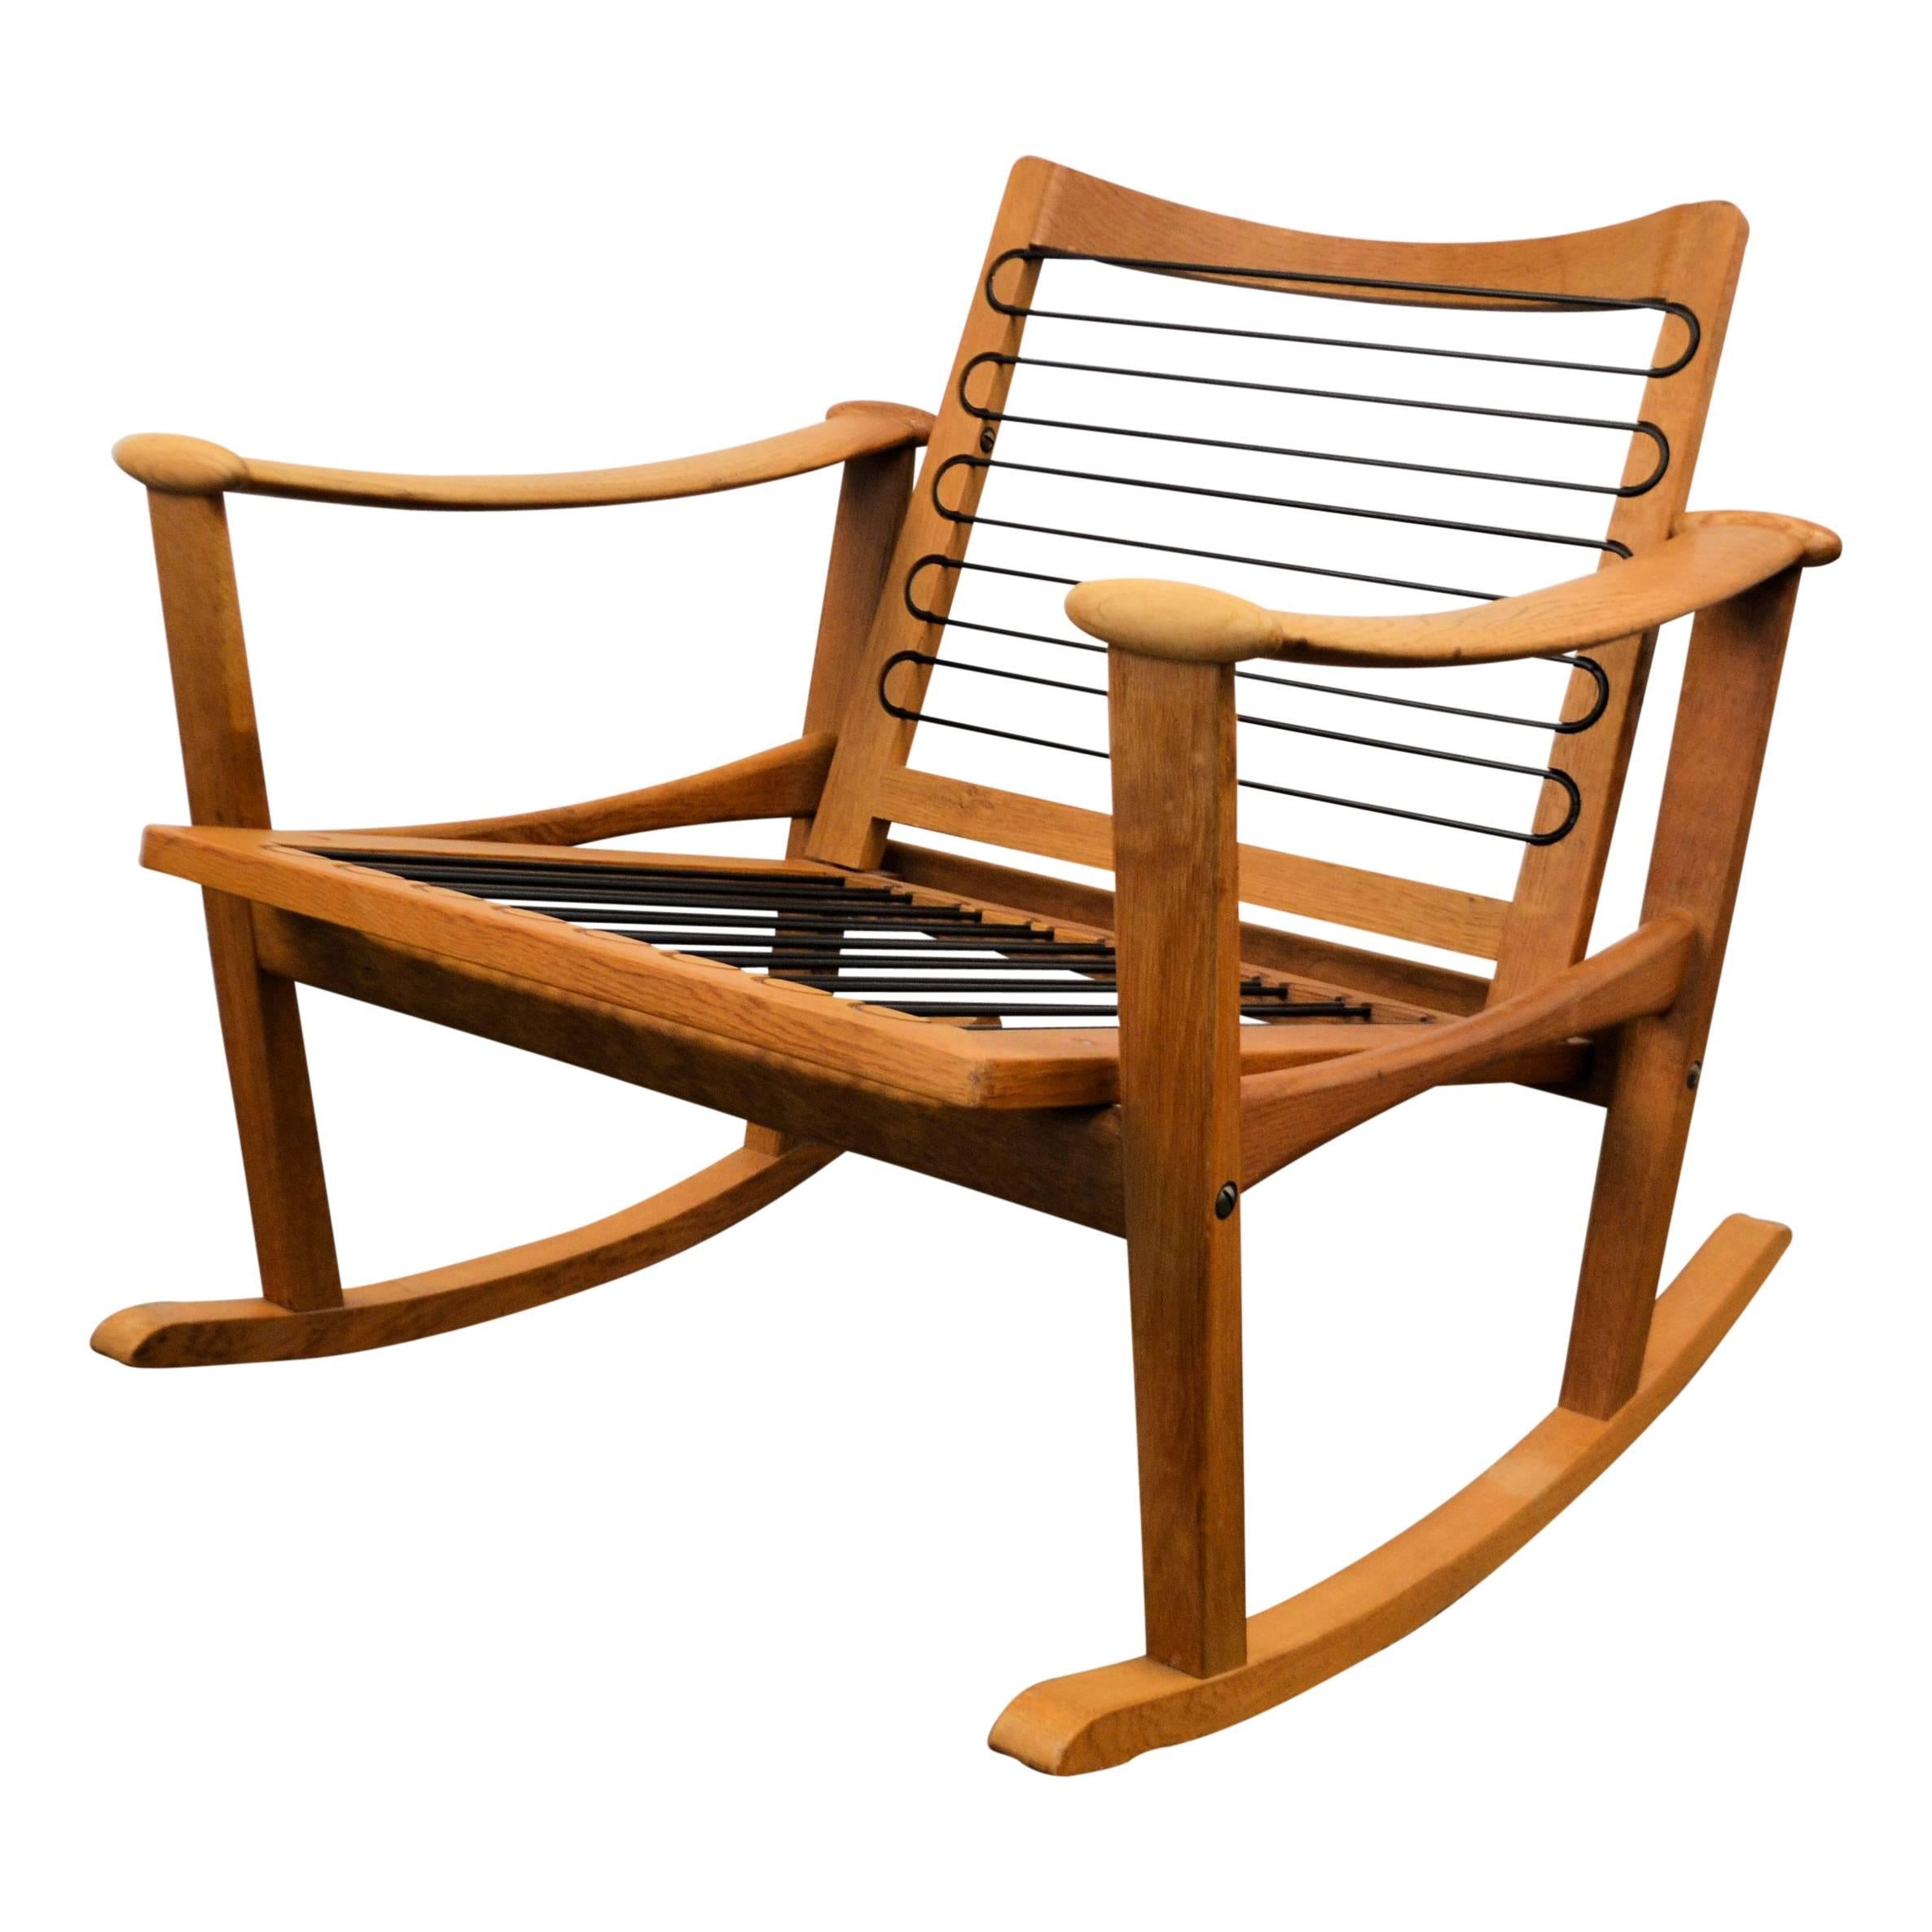 Mid-20th Century Finn Juhl Oak Rocking Chair For Sale